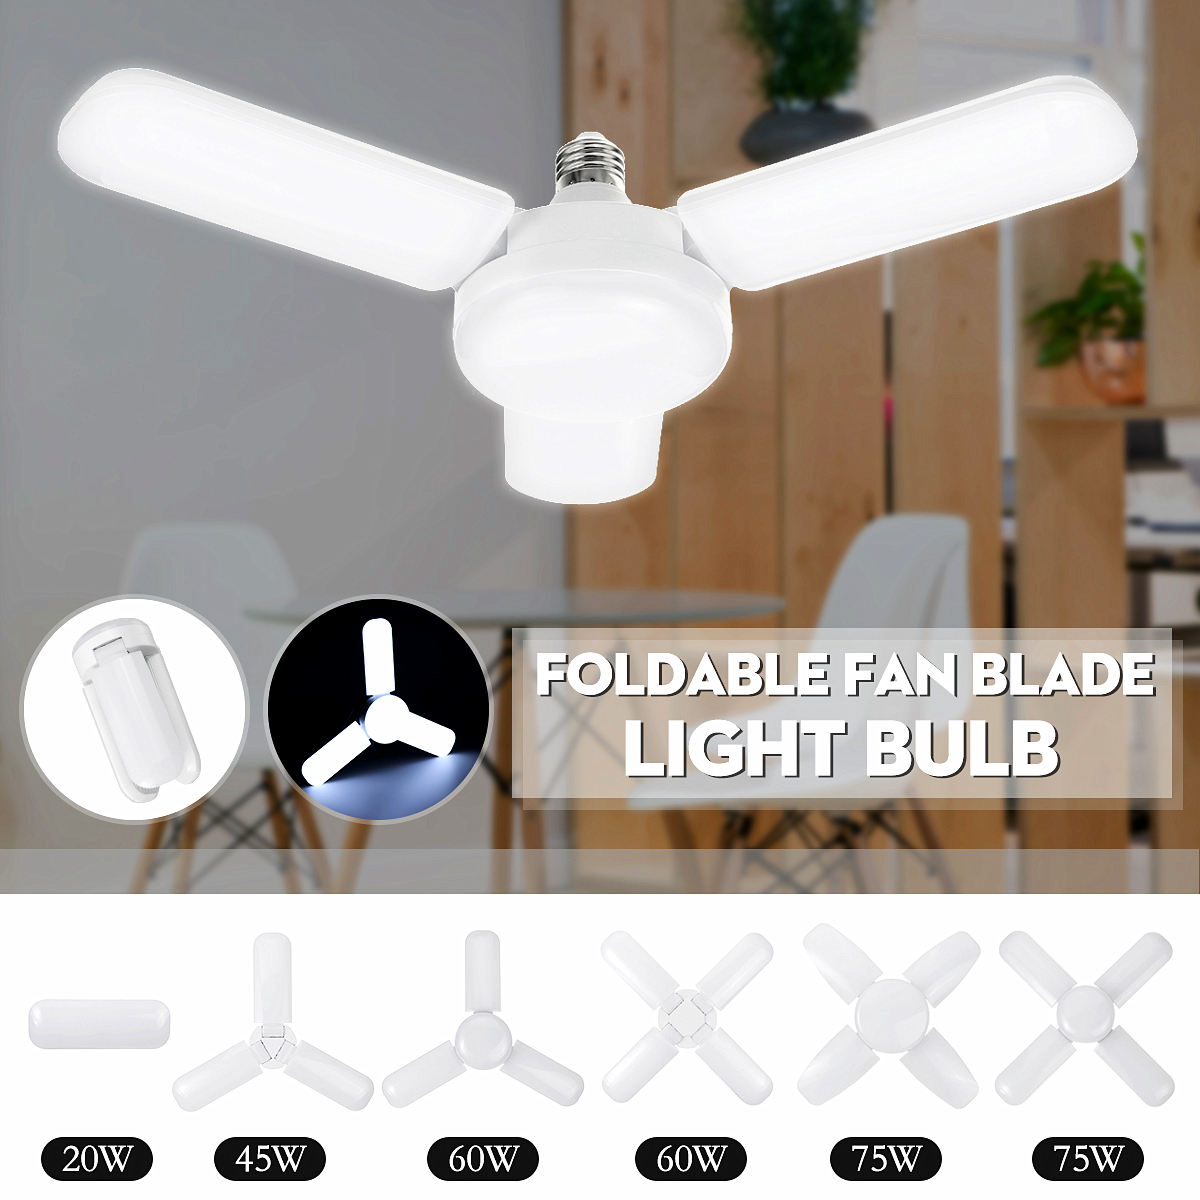 134-blade-E27-LED-Light-Bulb-Foldable-Fan-Blade-Light-Deformable-Ceiling-Lamp-Home-Living-Room-Inter-1861740-2